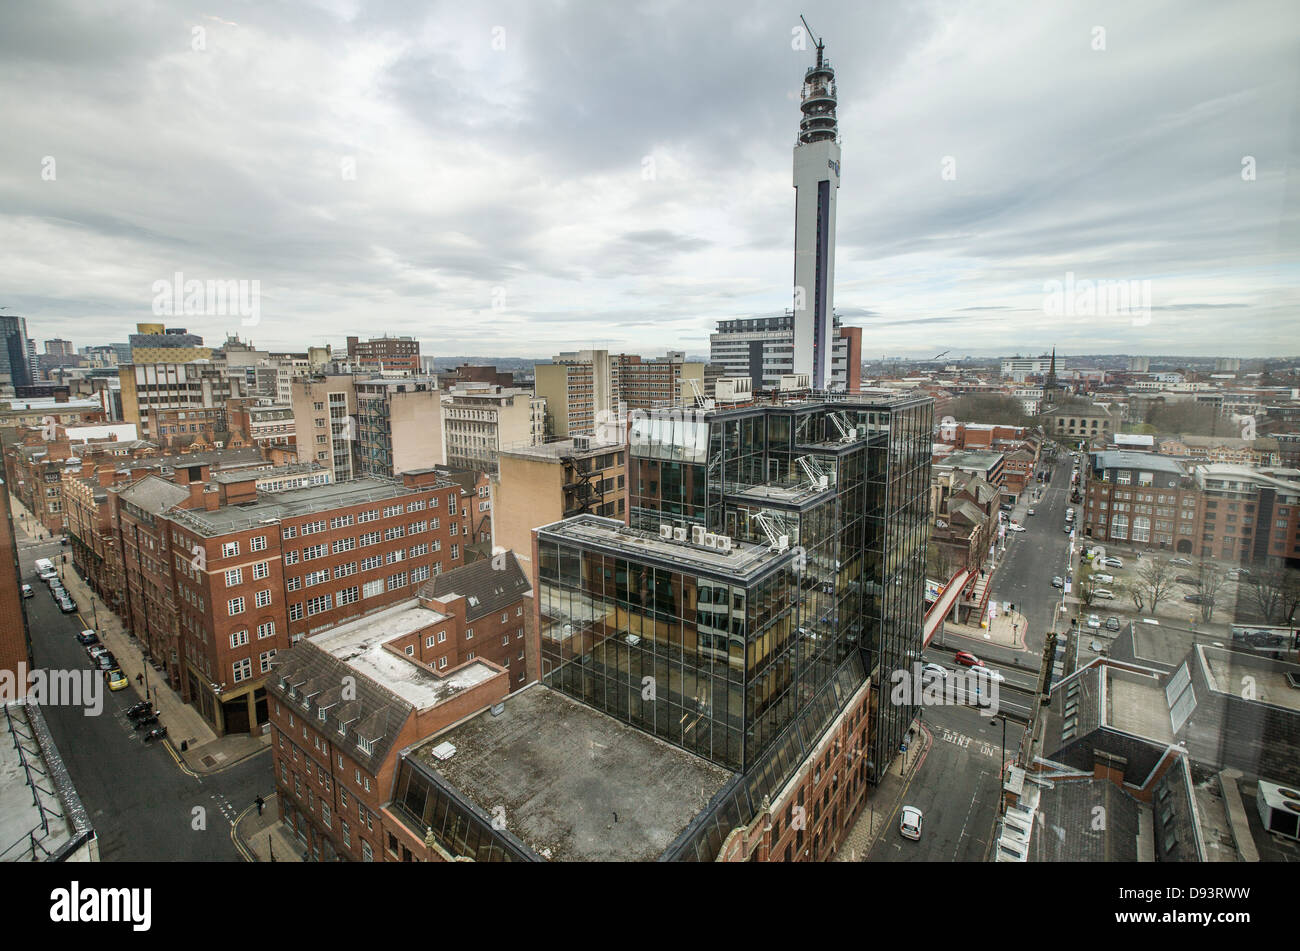 Ein Blick auf das Stadtzentrum von Birmingham, West Midlands, UK. Stockfoto